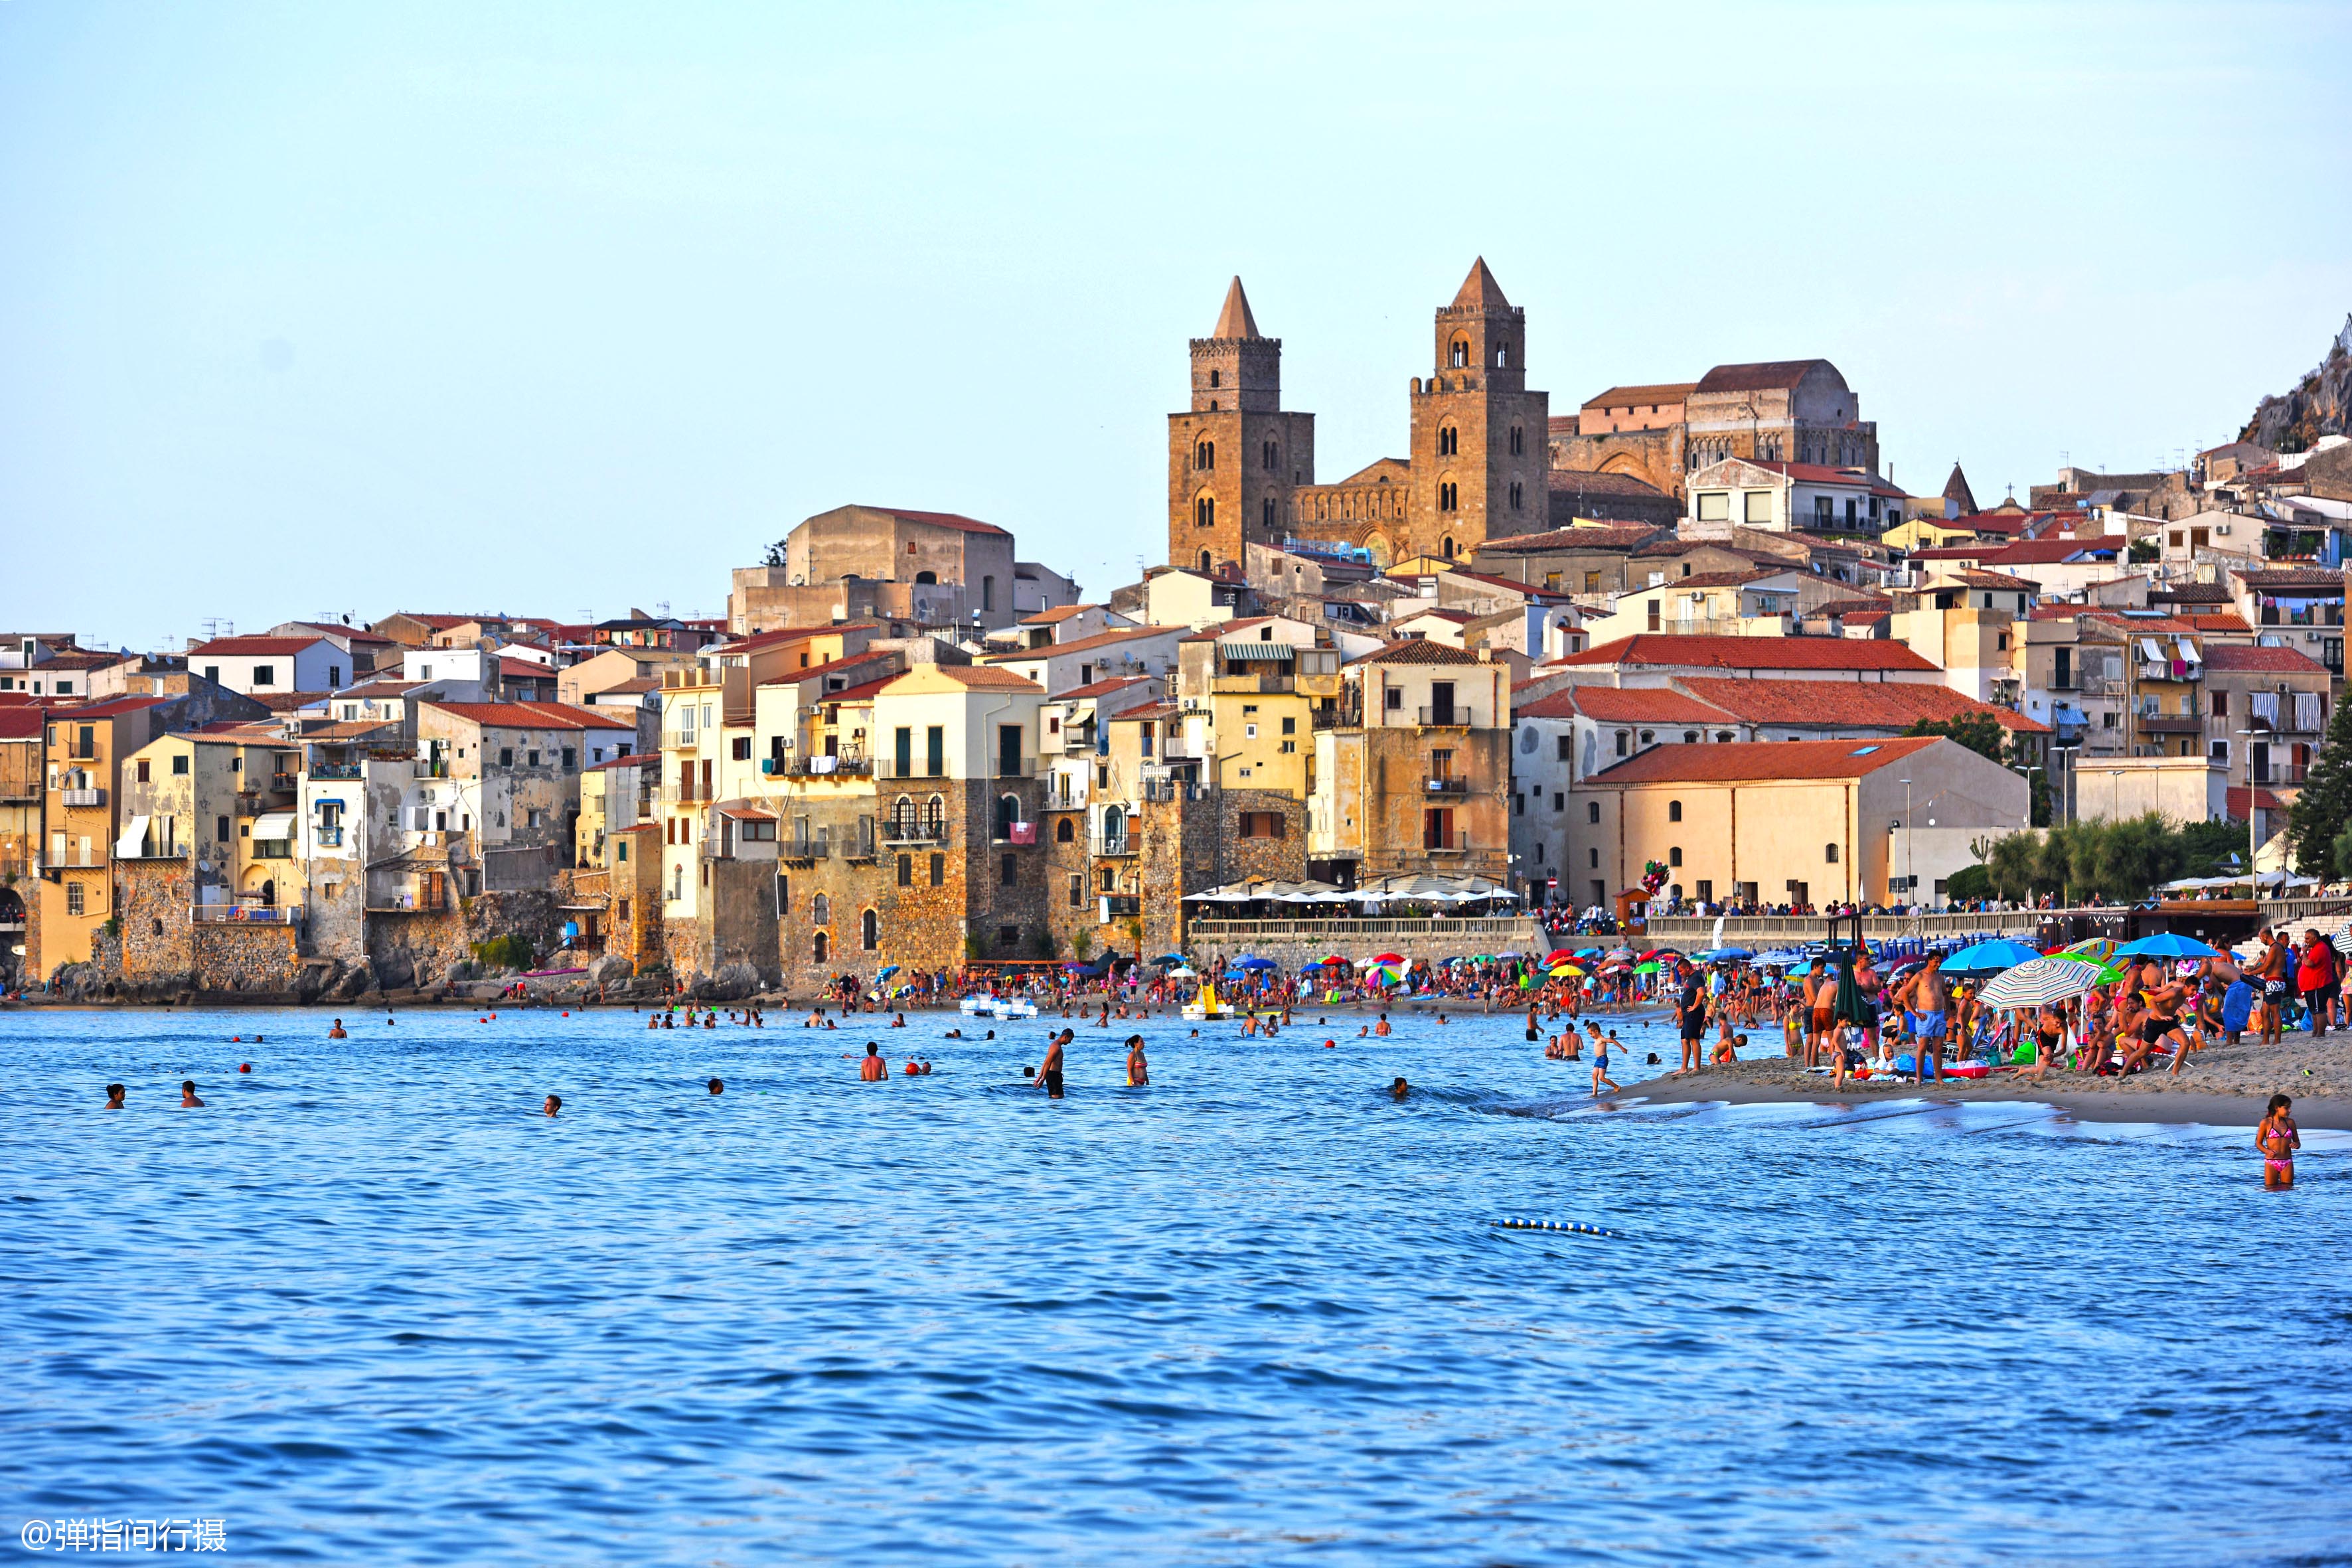 意大利千年小城,面朝大海红蓝相映,是西西里岛最美度假胜地